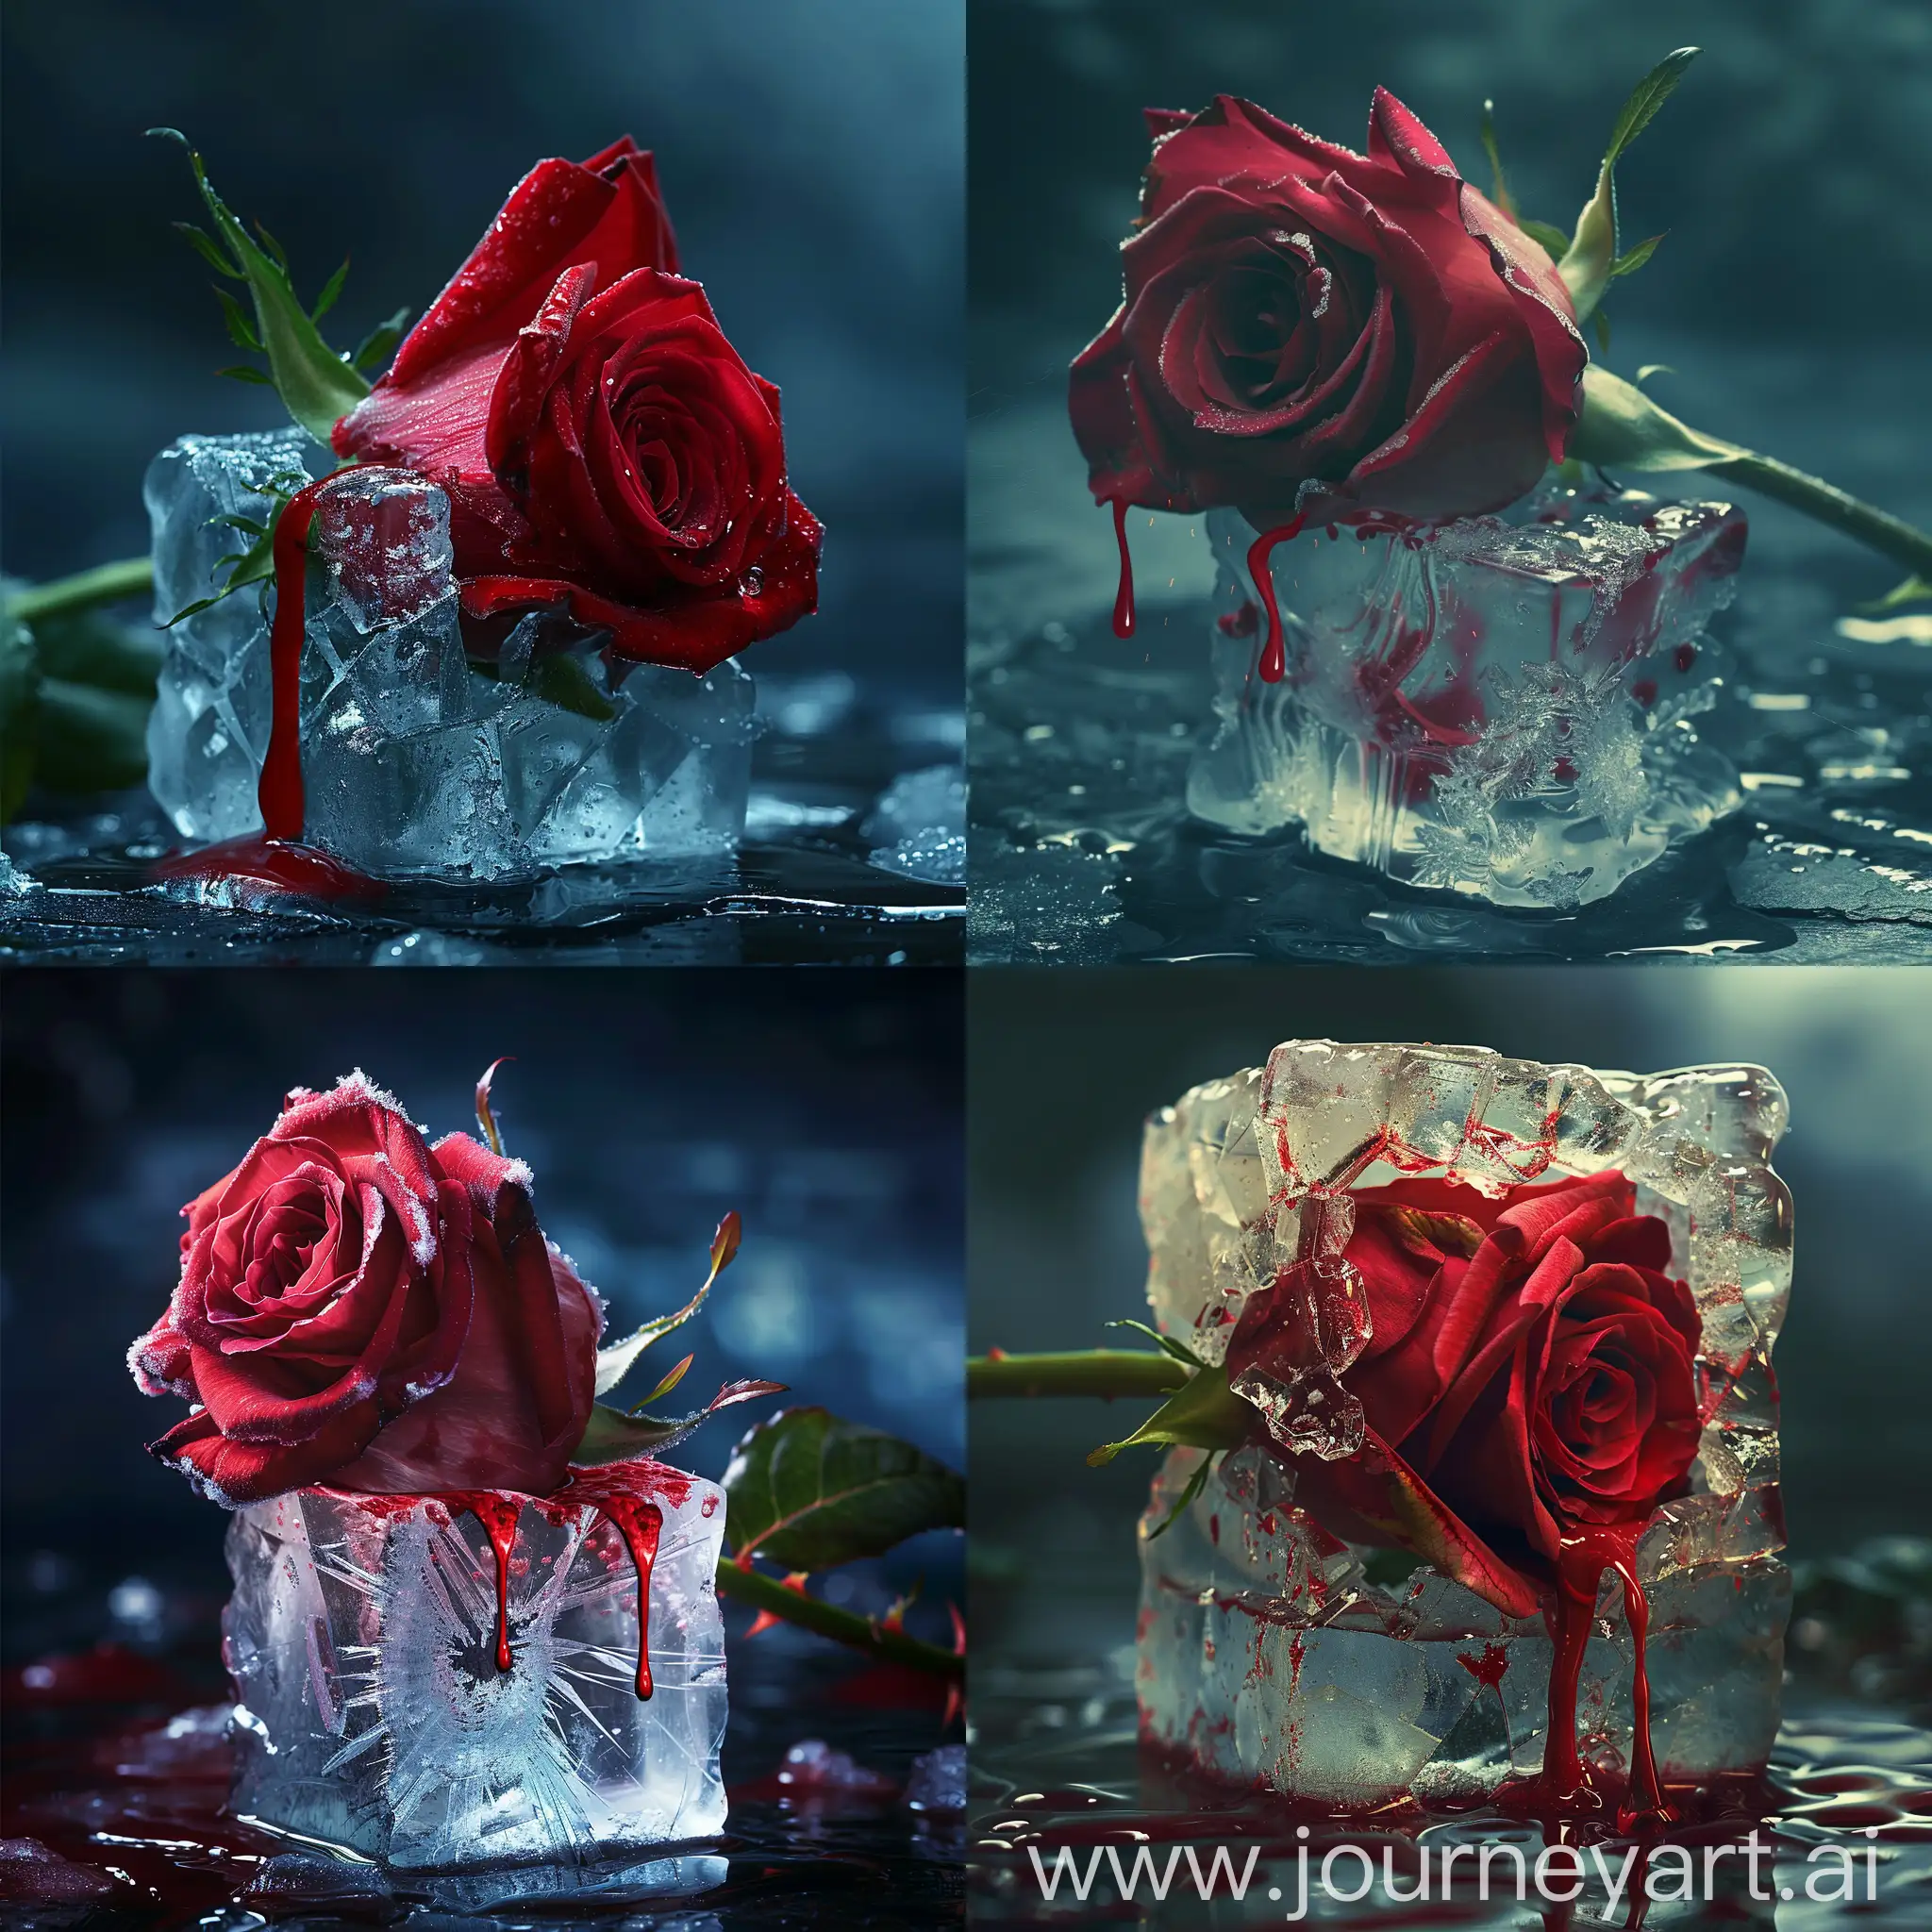 Фотография крупным планом красивой красной розы, прорывающейся сквозь куб изо льда, расколотая потрескавшаяся ледяная поверхность, матовые цвета, кровь, капающая из розы, тающий лед, атмосфера Дня святого Валентина, кинематографический, острый фокус, сложный, кинематографический, драматический свет